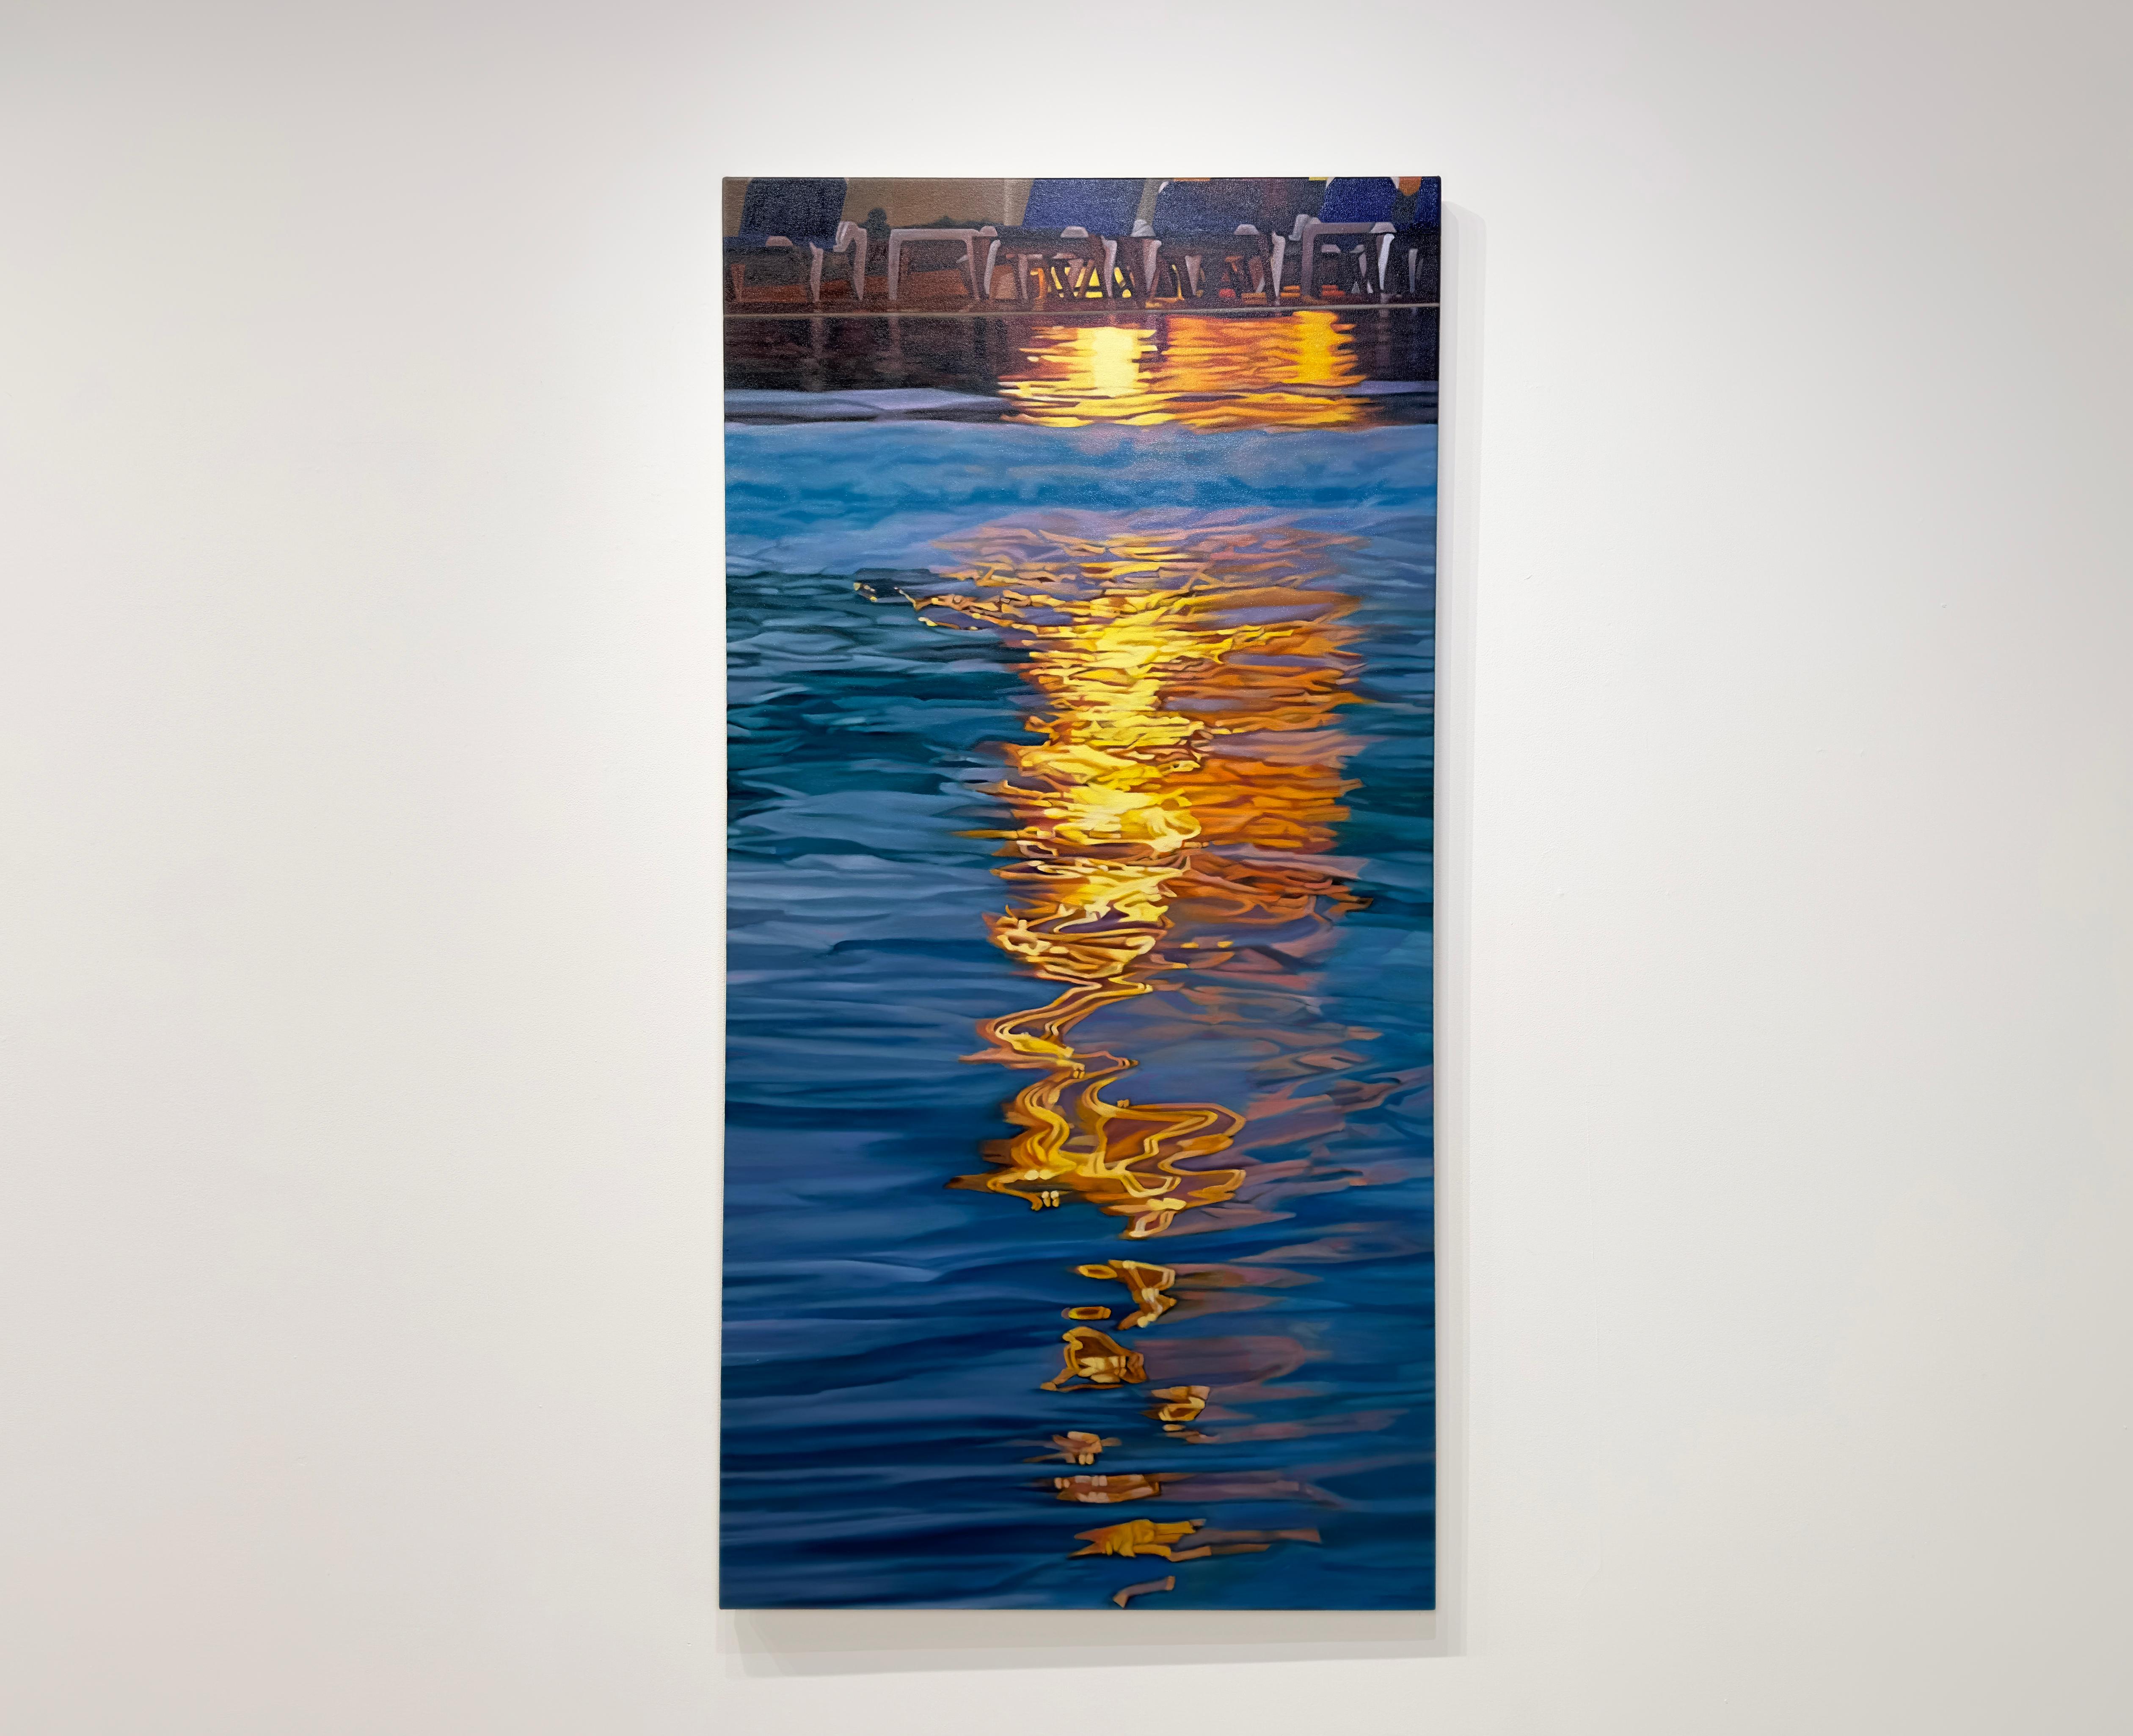 BEFORE NIGHTFALL - Réalisme / Paysage aquatique / Contemporain / Californie - Painting de Sunghee Jang